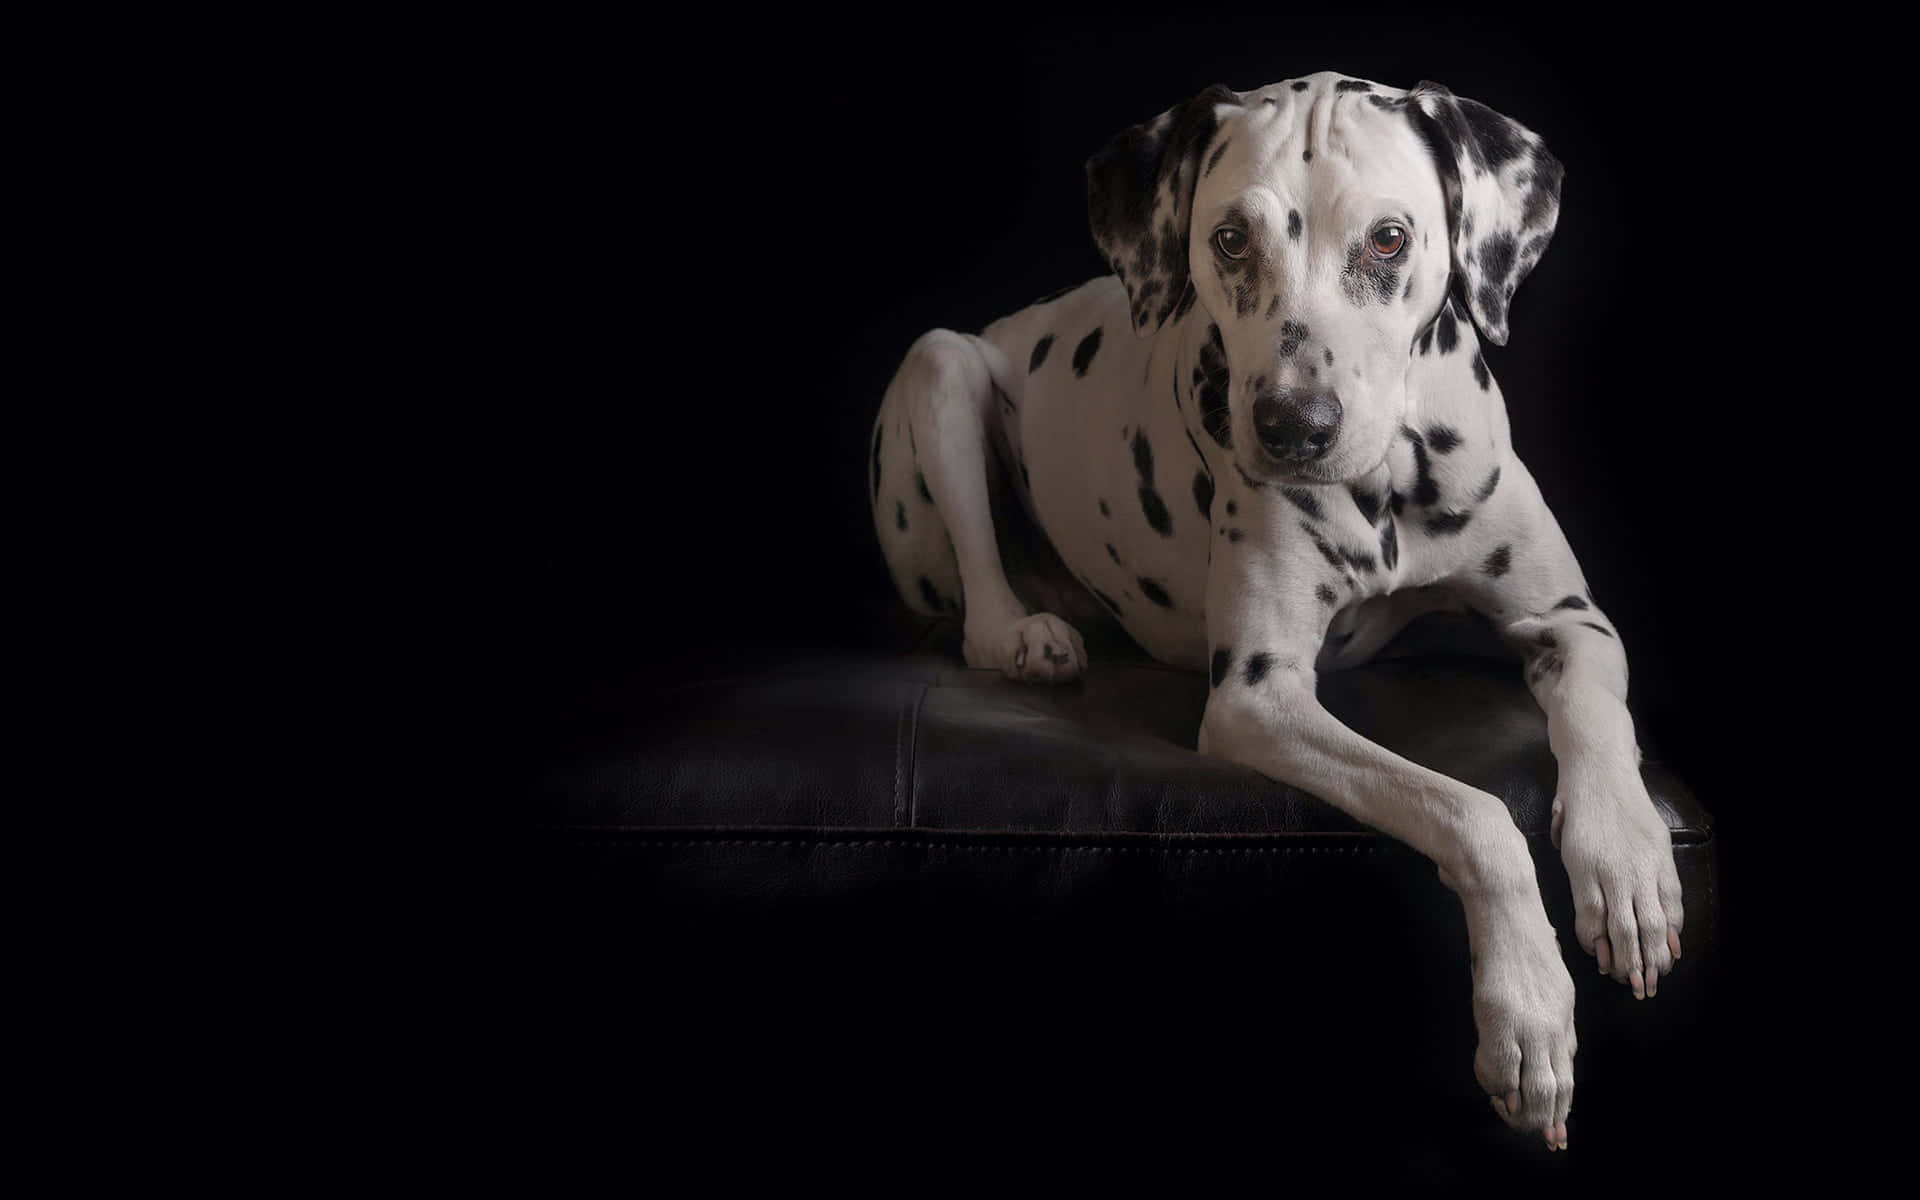 Etnærbillede Af En Plettet Dalmatiner Hund I En Legende Stilling.